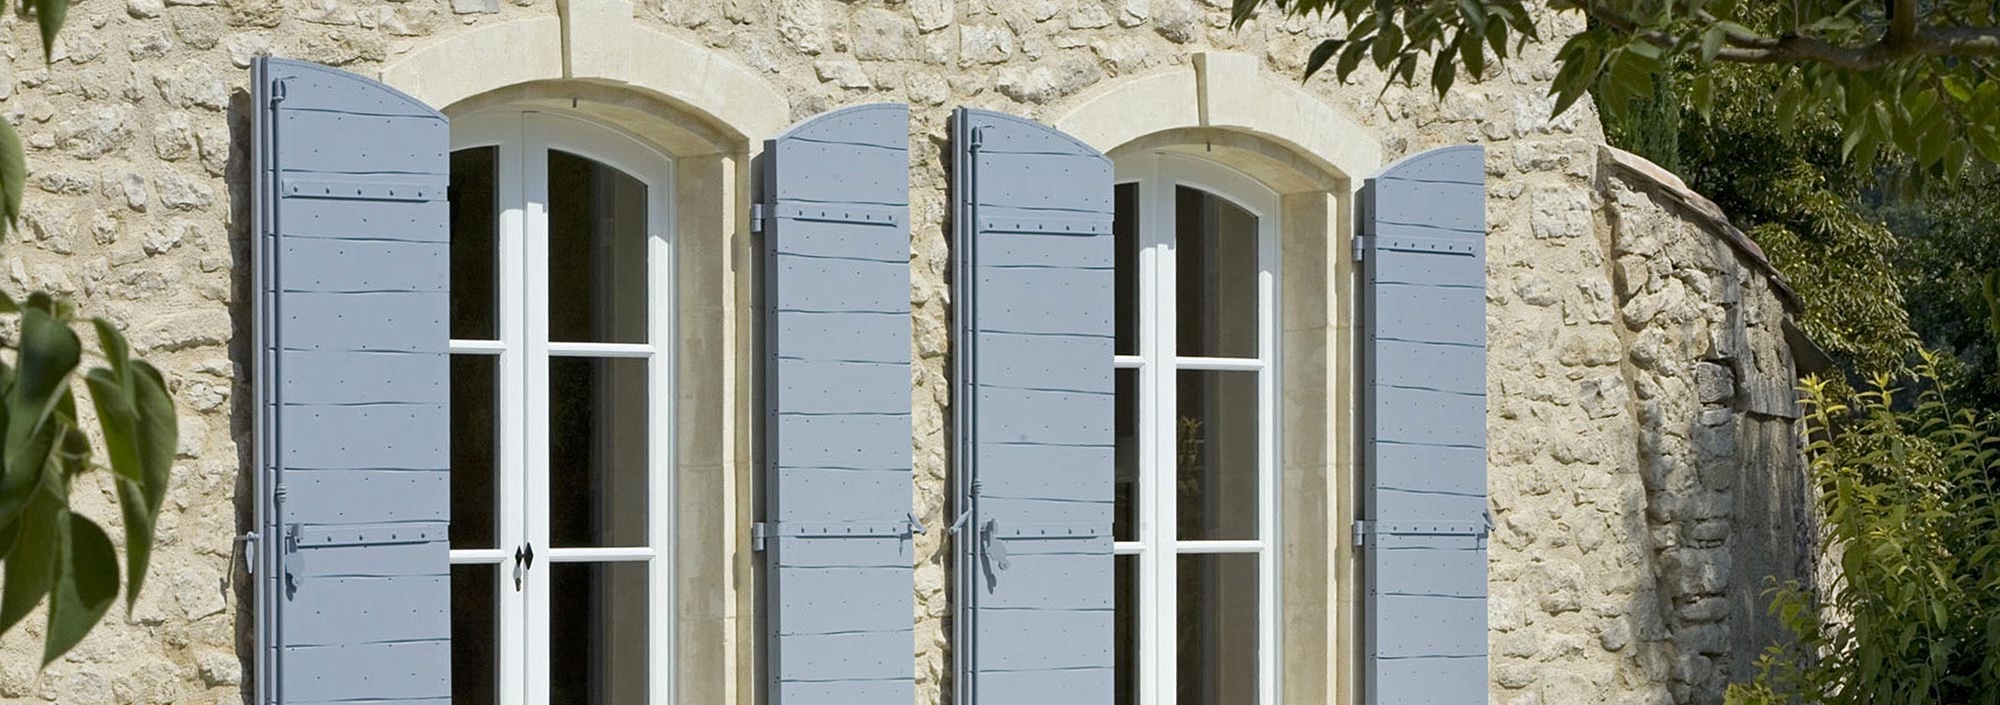 Portes-fenêtres bois installée dans une maison de campagne